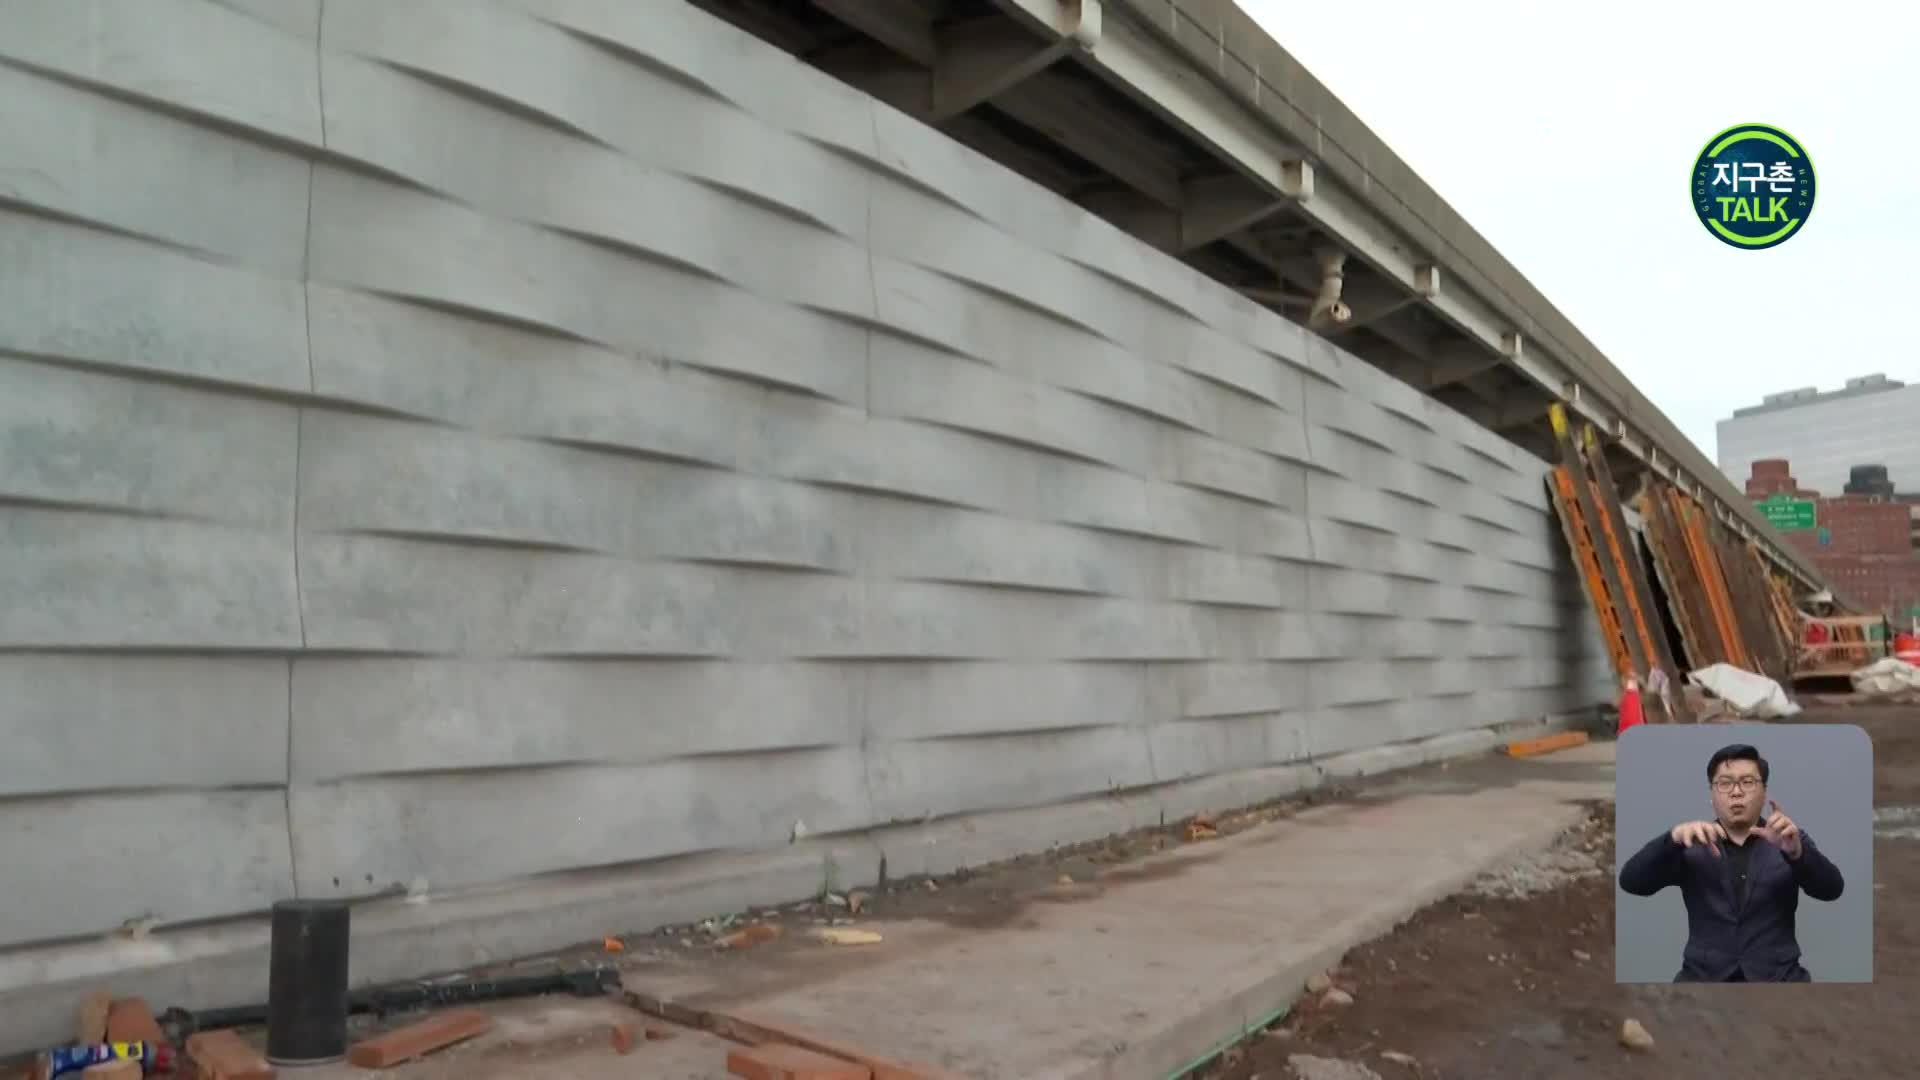 [지구촌 Talk] 美 뉴욕, 도심 해안 따라 벽 건설